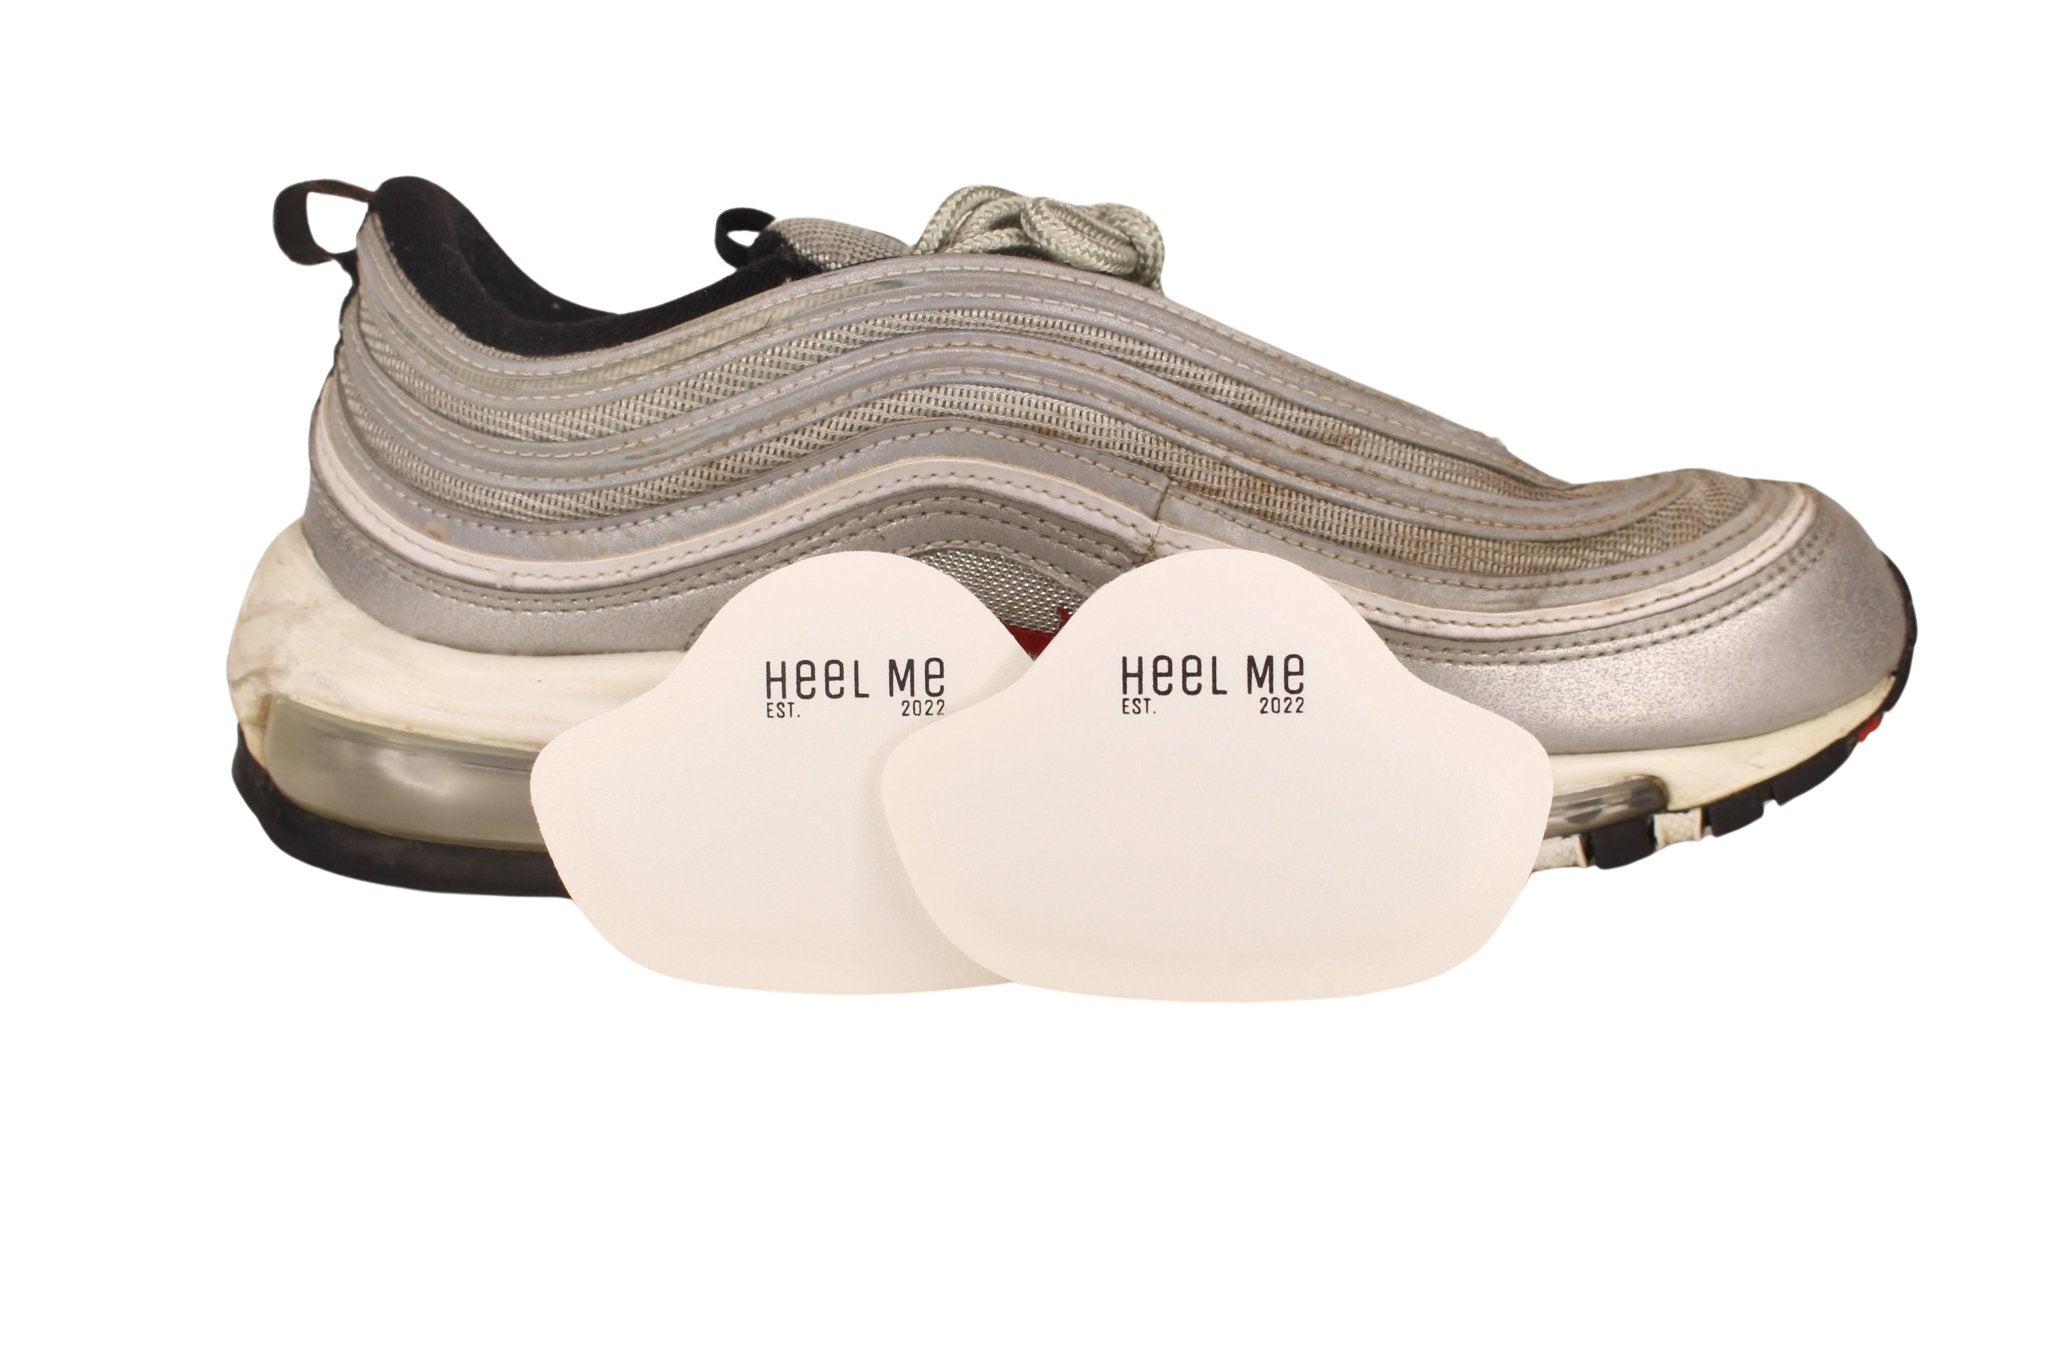 Heel Me - 1 pair